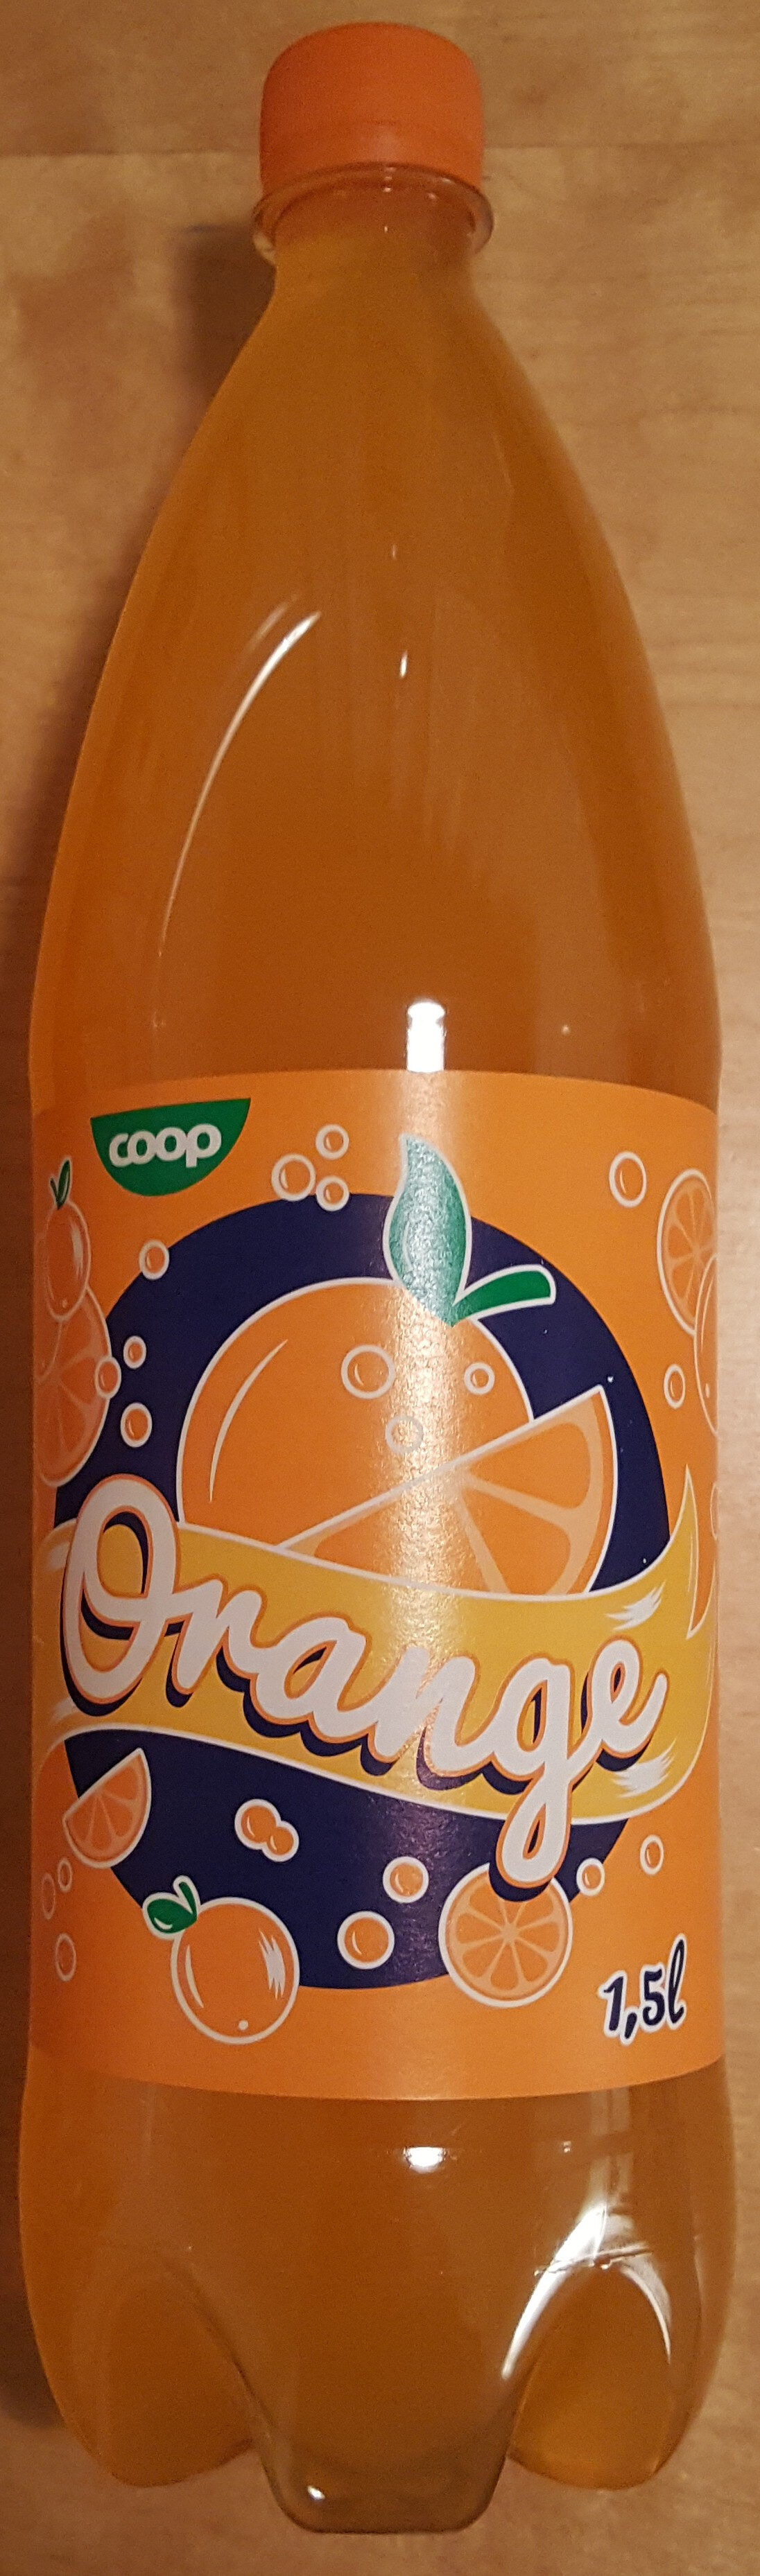 Orange - Produkt